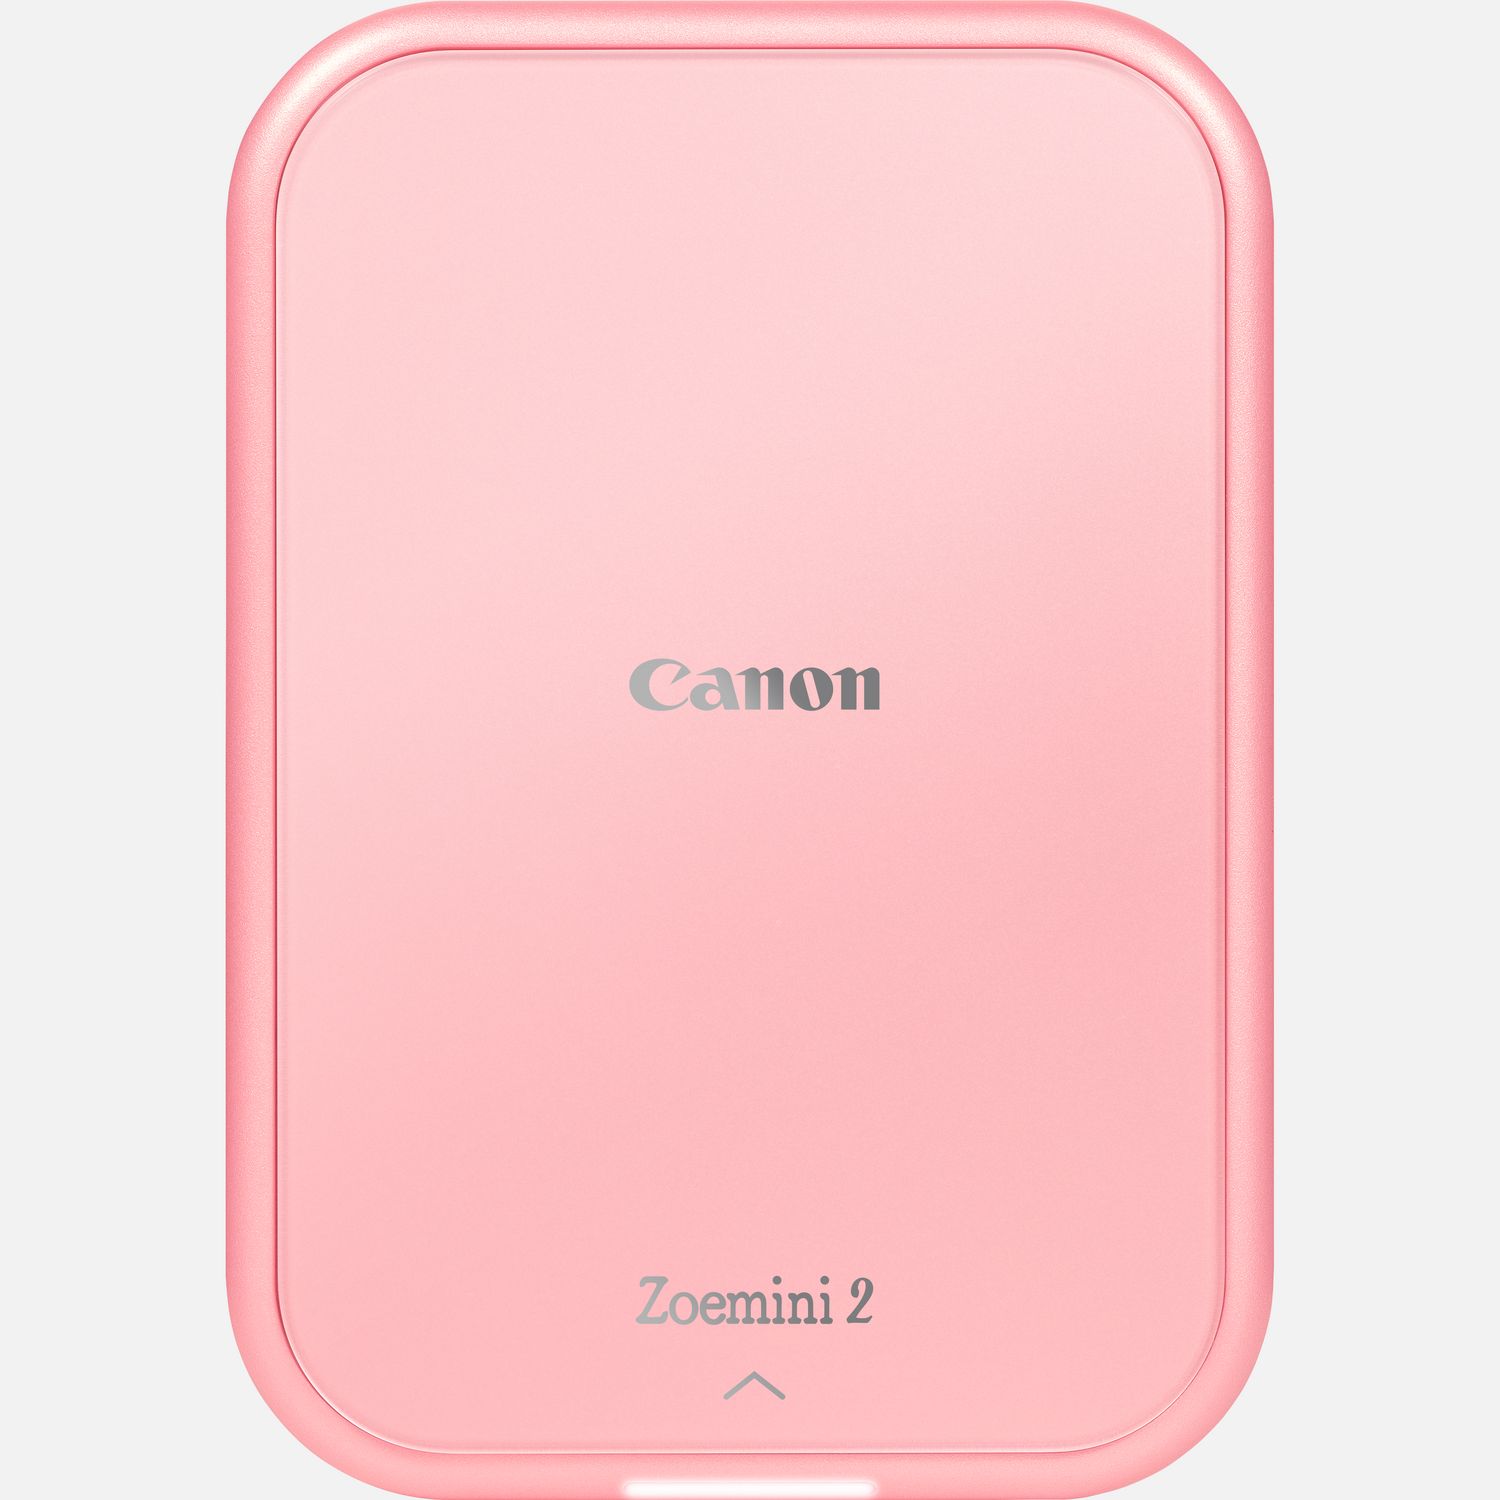 Imprimante portable Canon Zoemini Rose